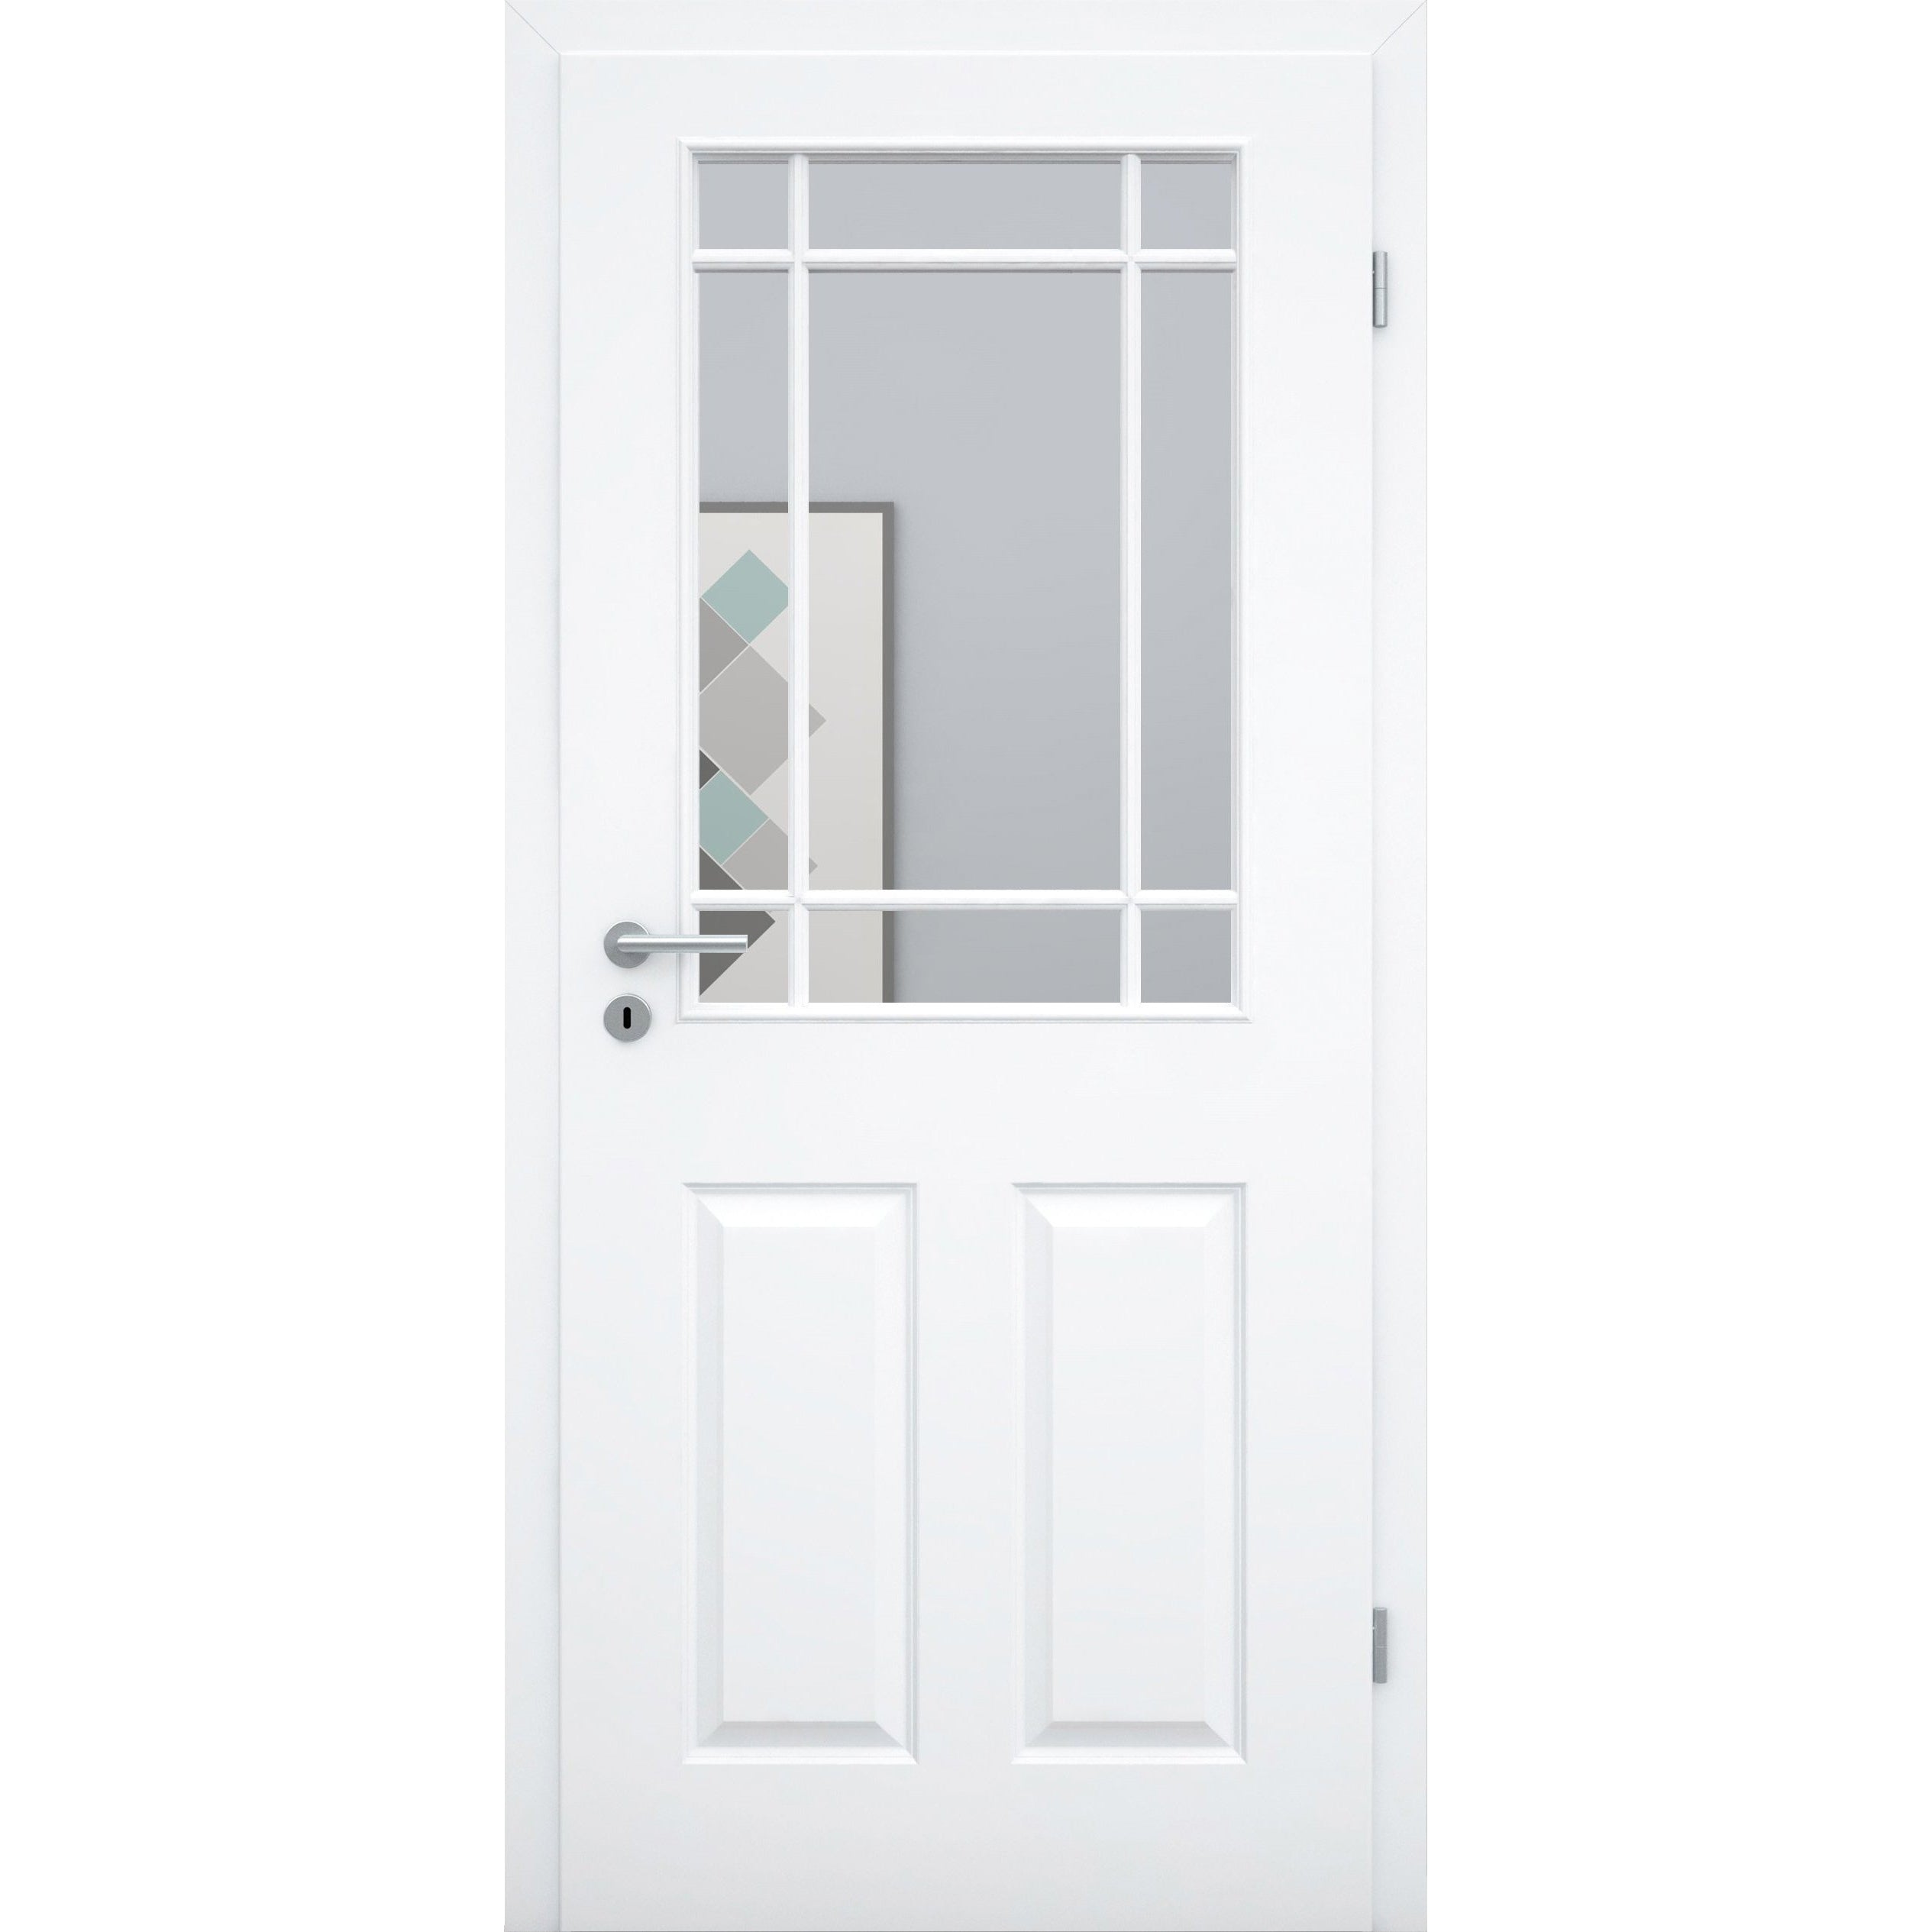 Zimmertür mit Zarge und Lichtausschnitt mit Sprossenrahmen klassisch brillant-weiß 4 Kassetten Designkante - Modell Stiltür K43LASPK